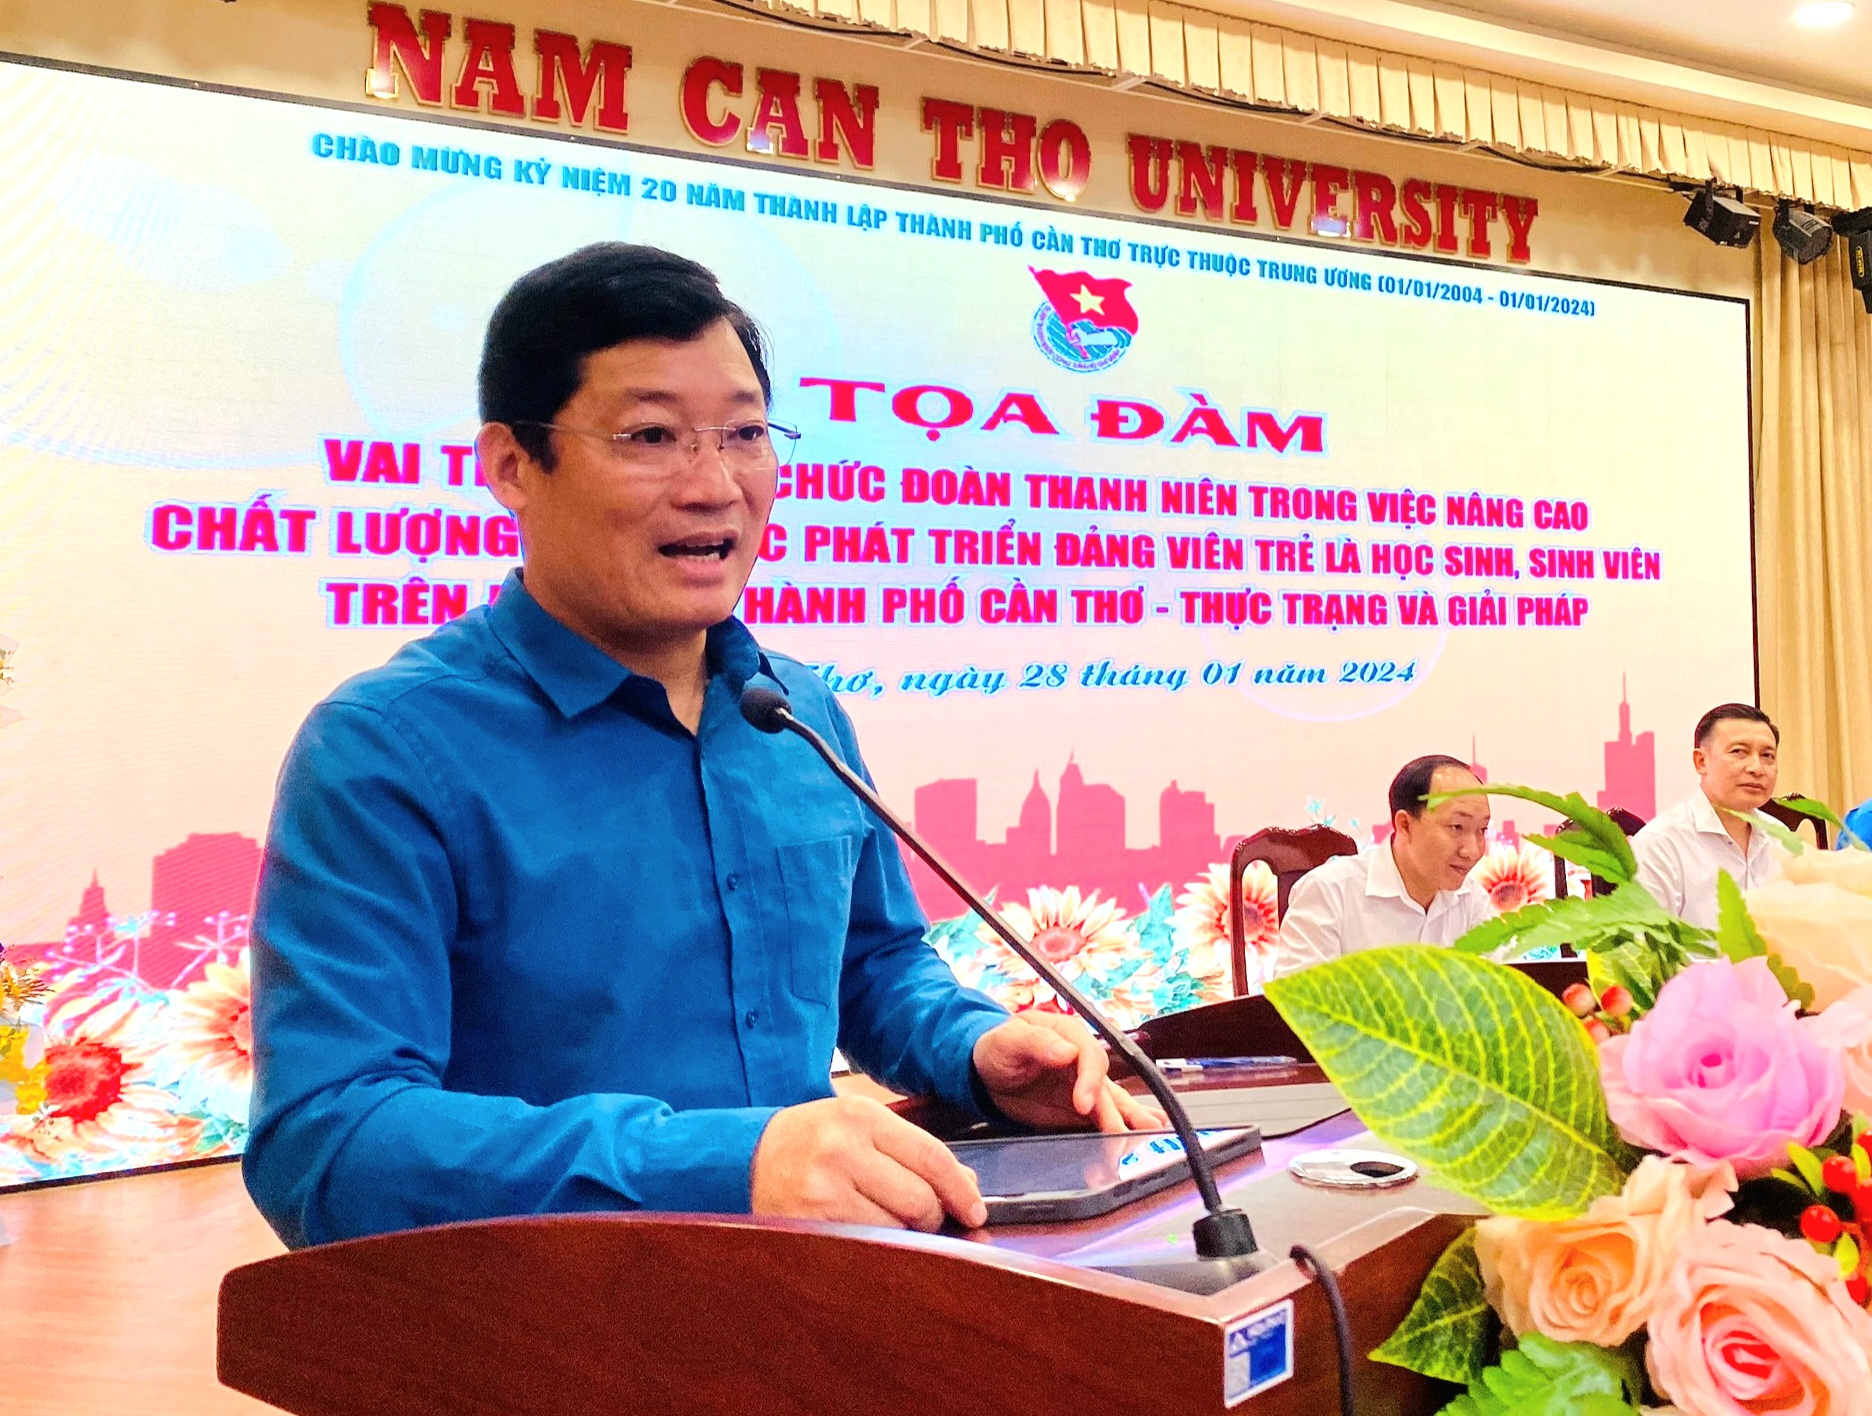 PGS.TS Nguyễn Xuân Phong - Phó Giám đốc Học viên chính trị, Khu vục 4 phát biểu tại buổi tọa đàm.